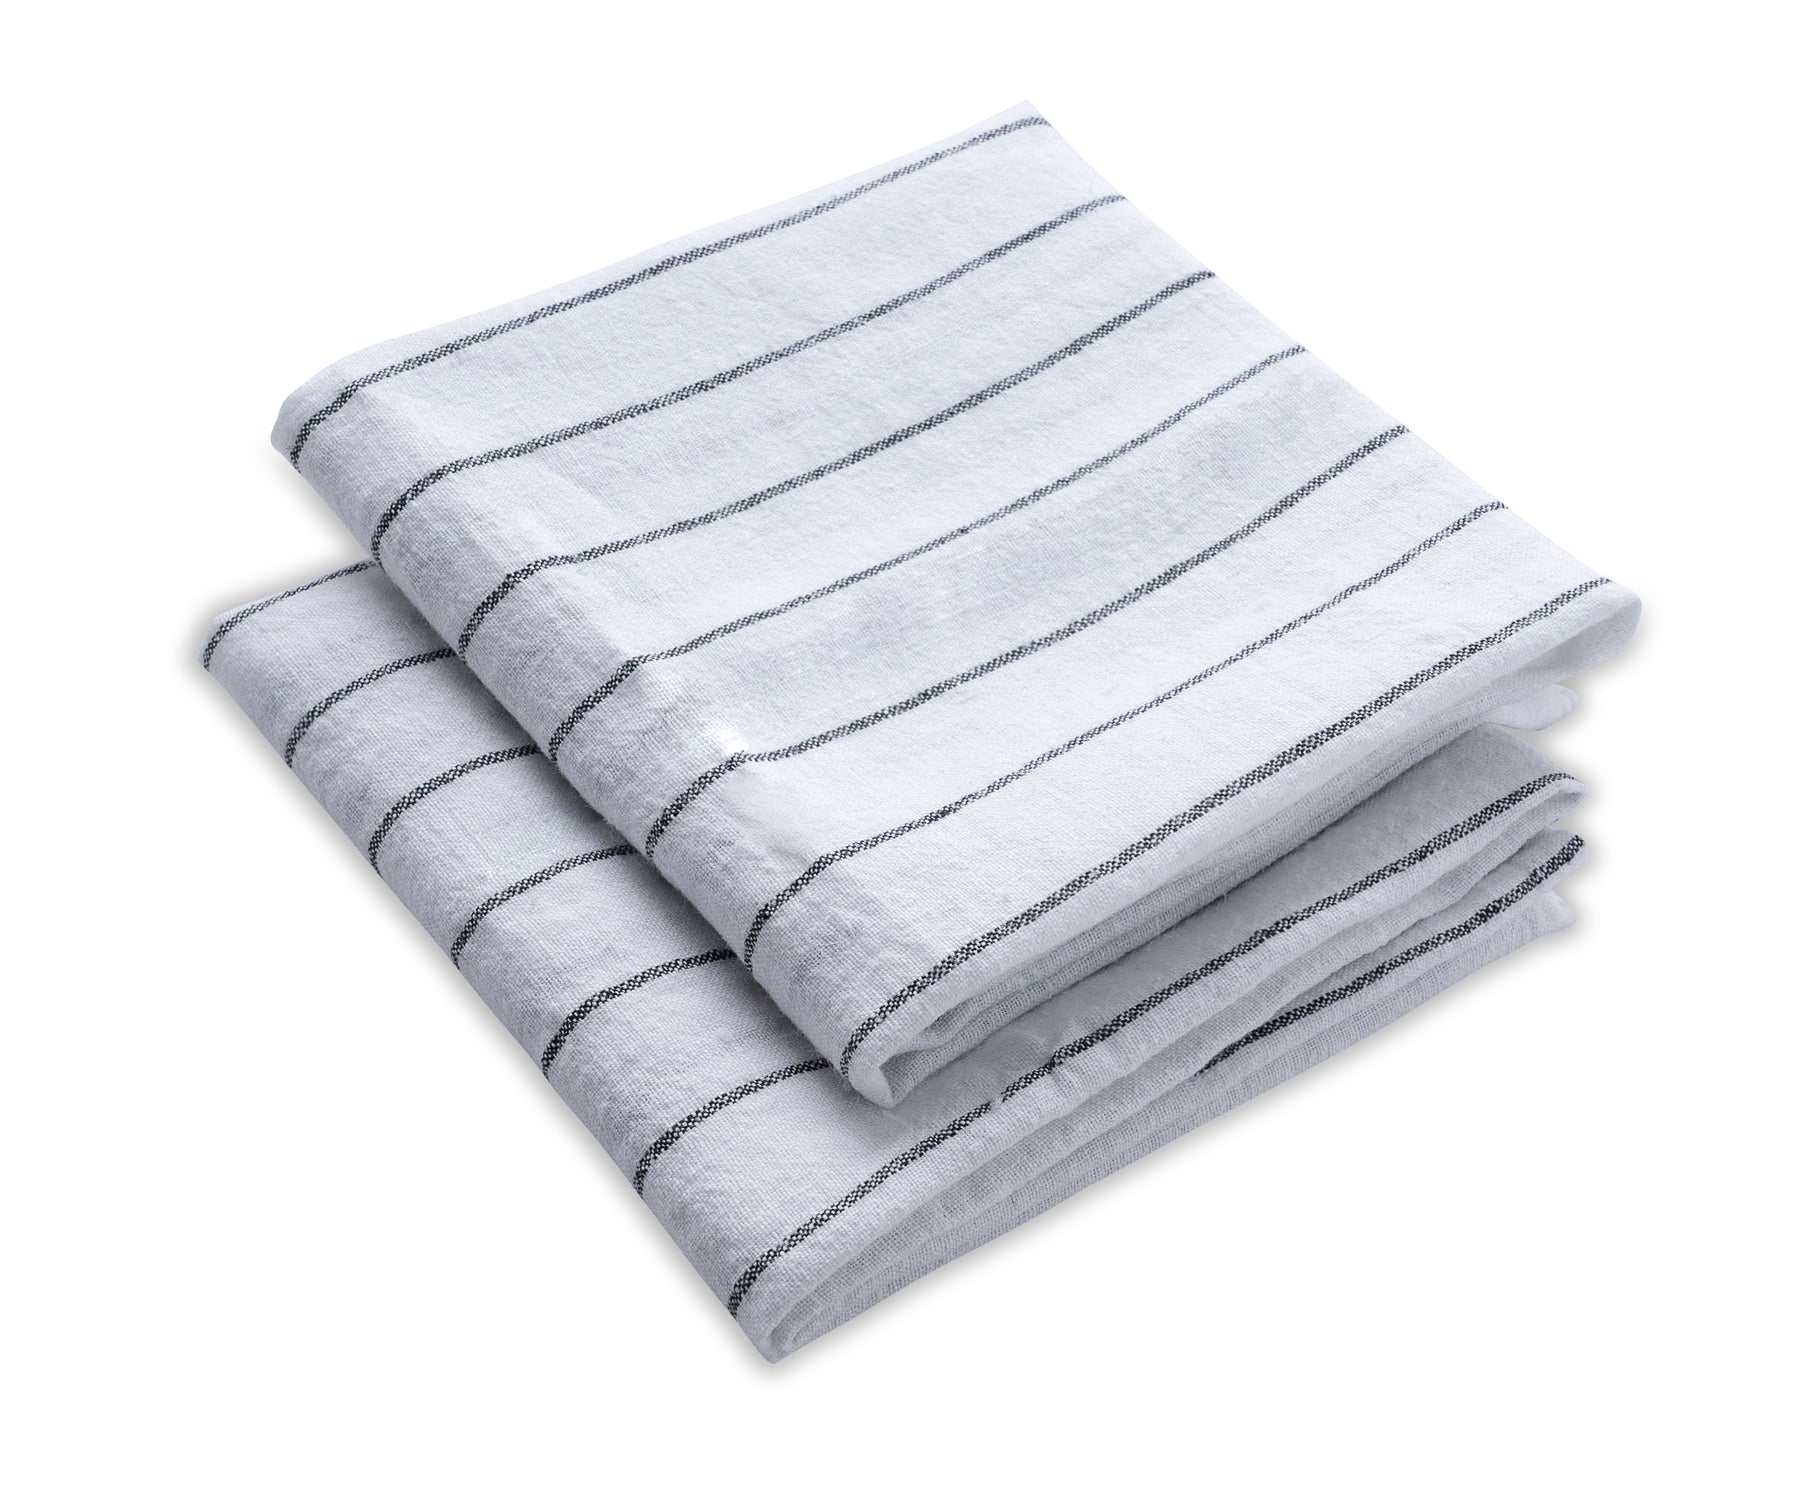 https://www.allcottonandlinen.com/cdn/shop/files/White-Black-Striped-Towels-7_1800x.jpg?v=1690526306